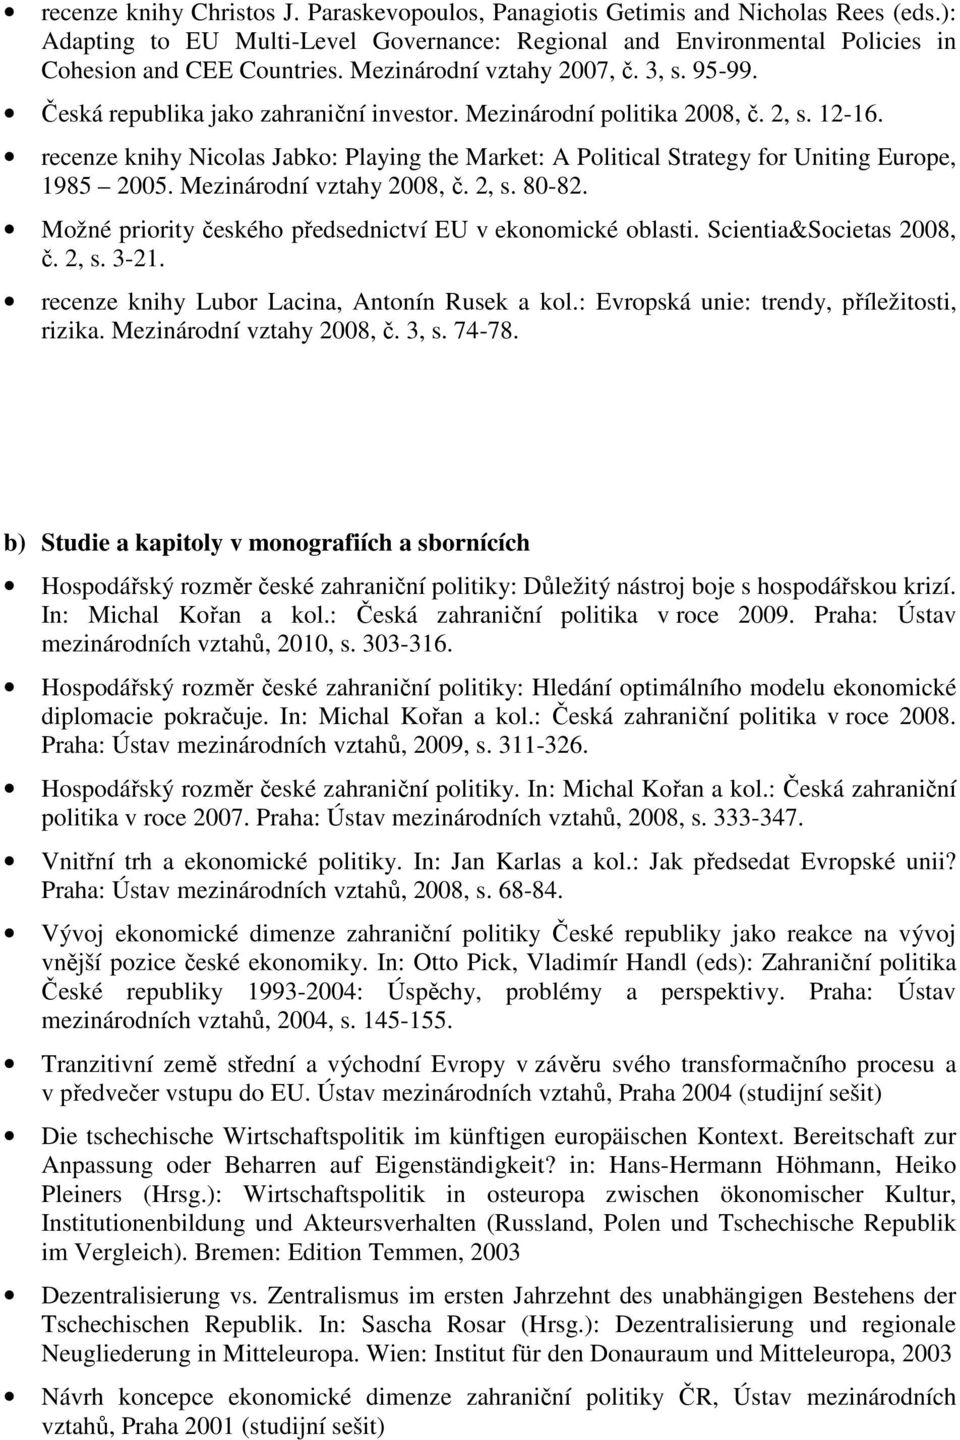 recenze knihy Nicolas Jabko: Playing the Market: A Political Strategy for Uniting Europe, 1985 2005. Mezinárodní vztahy 2008, č. 2, s. 80-82.